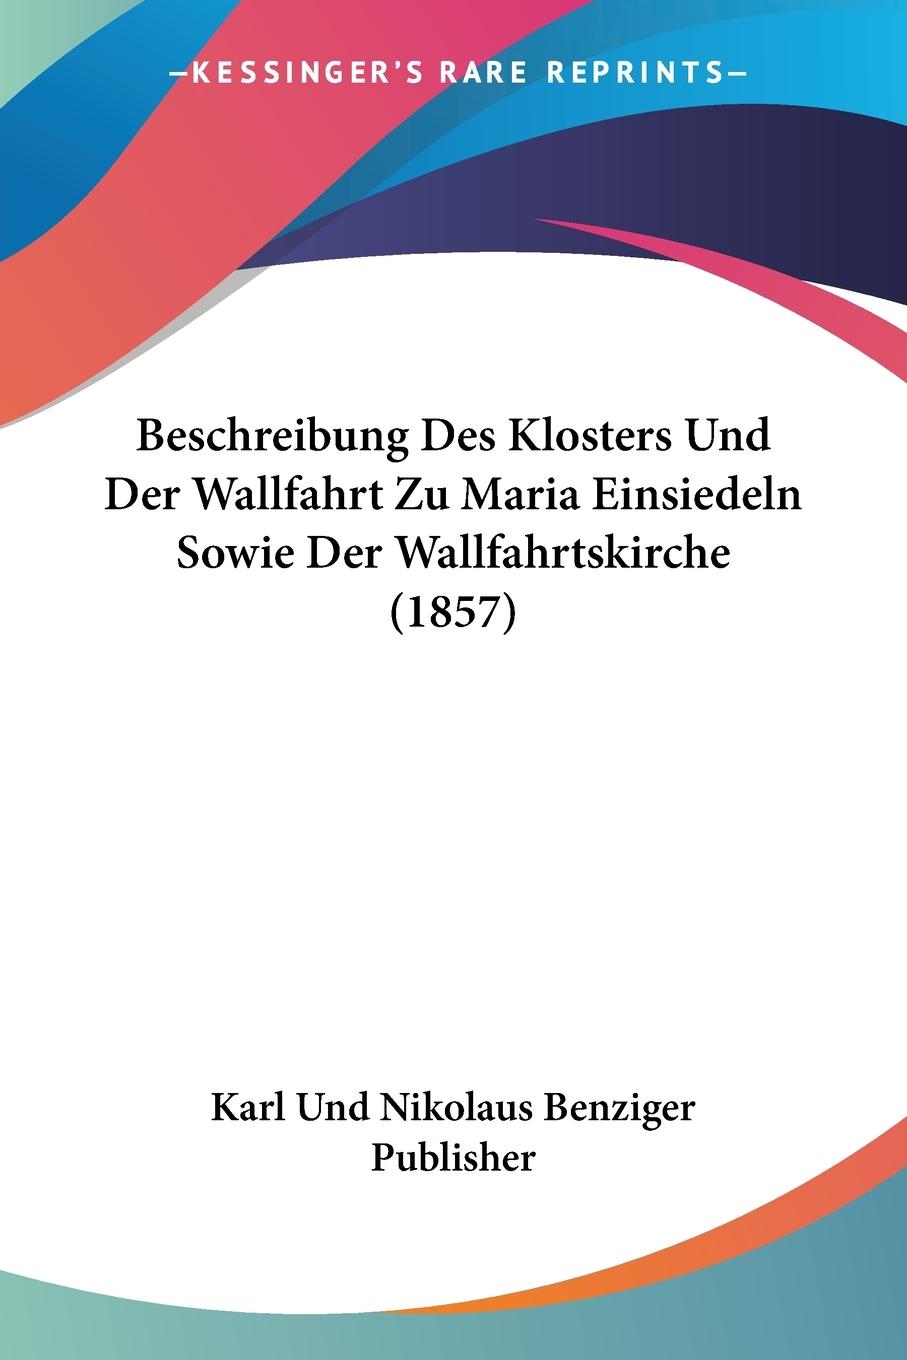 Beschreibung Des Klosters Und Der Wallfahrt Zu Maria Einsiedeln Sowie Der Wallfahrtskirche (1857) - Karl Und Nikolaus Benziger Publisher